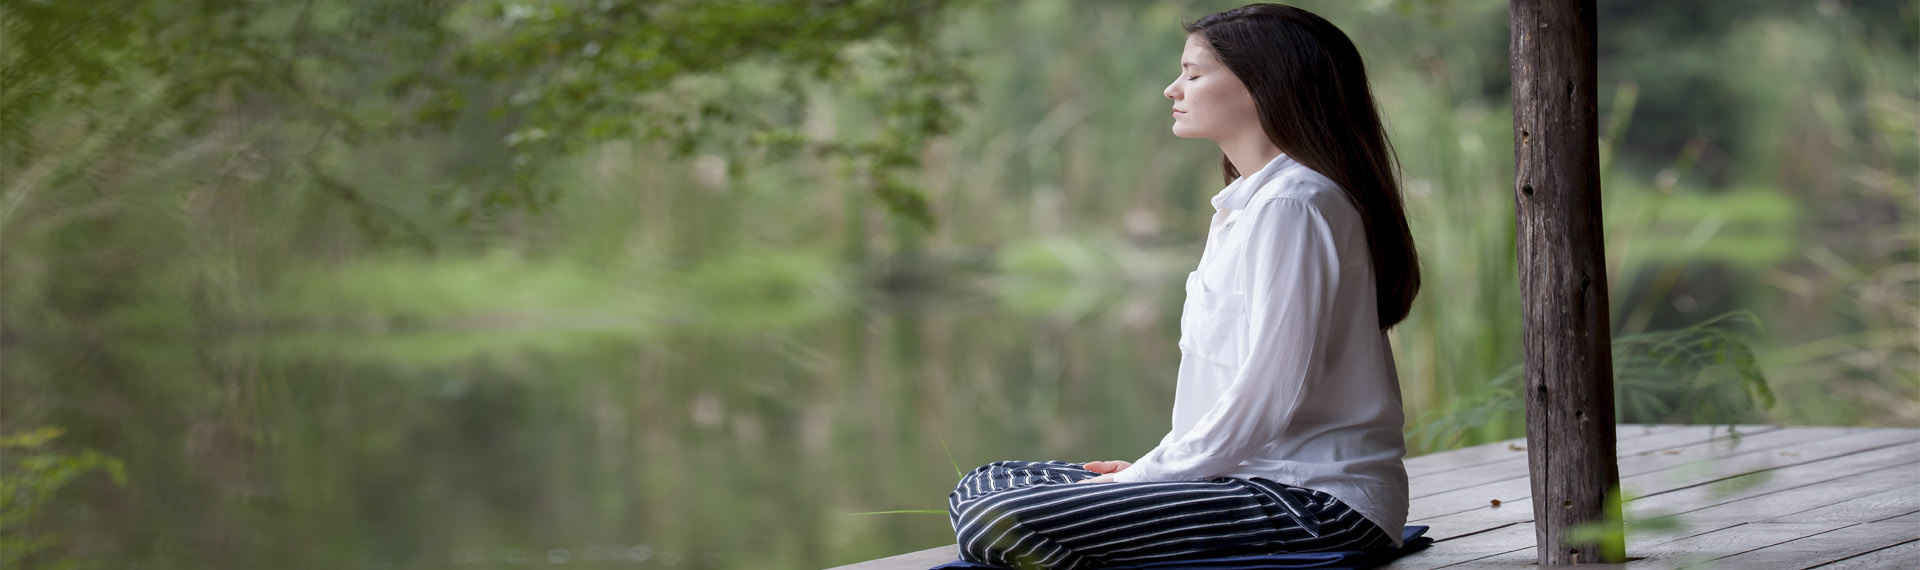 Meditación. Terapias naturales